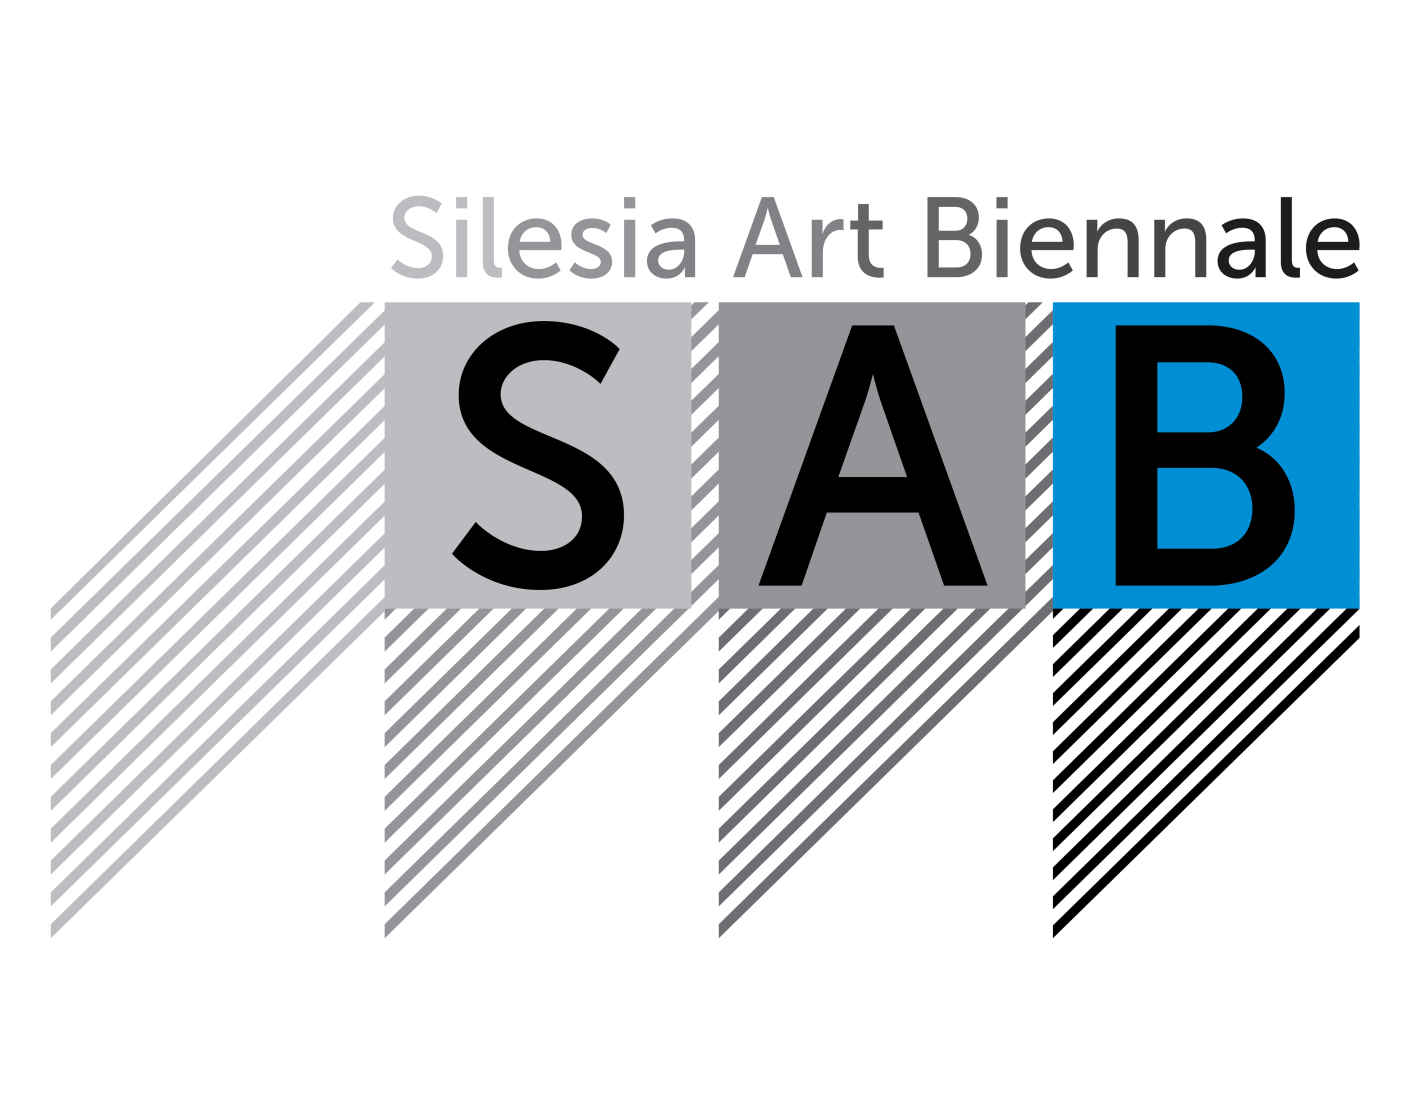 Silesia Art Biennale - logo